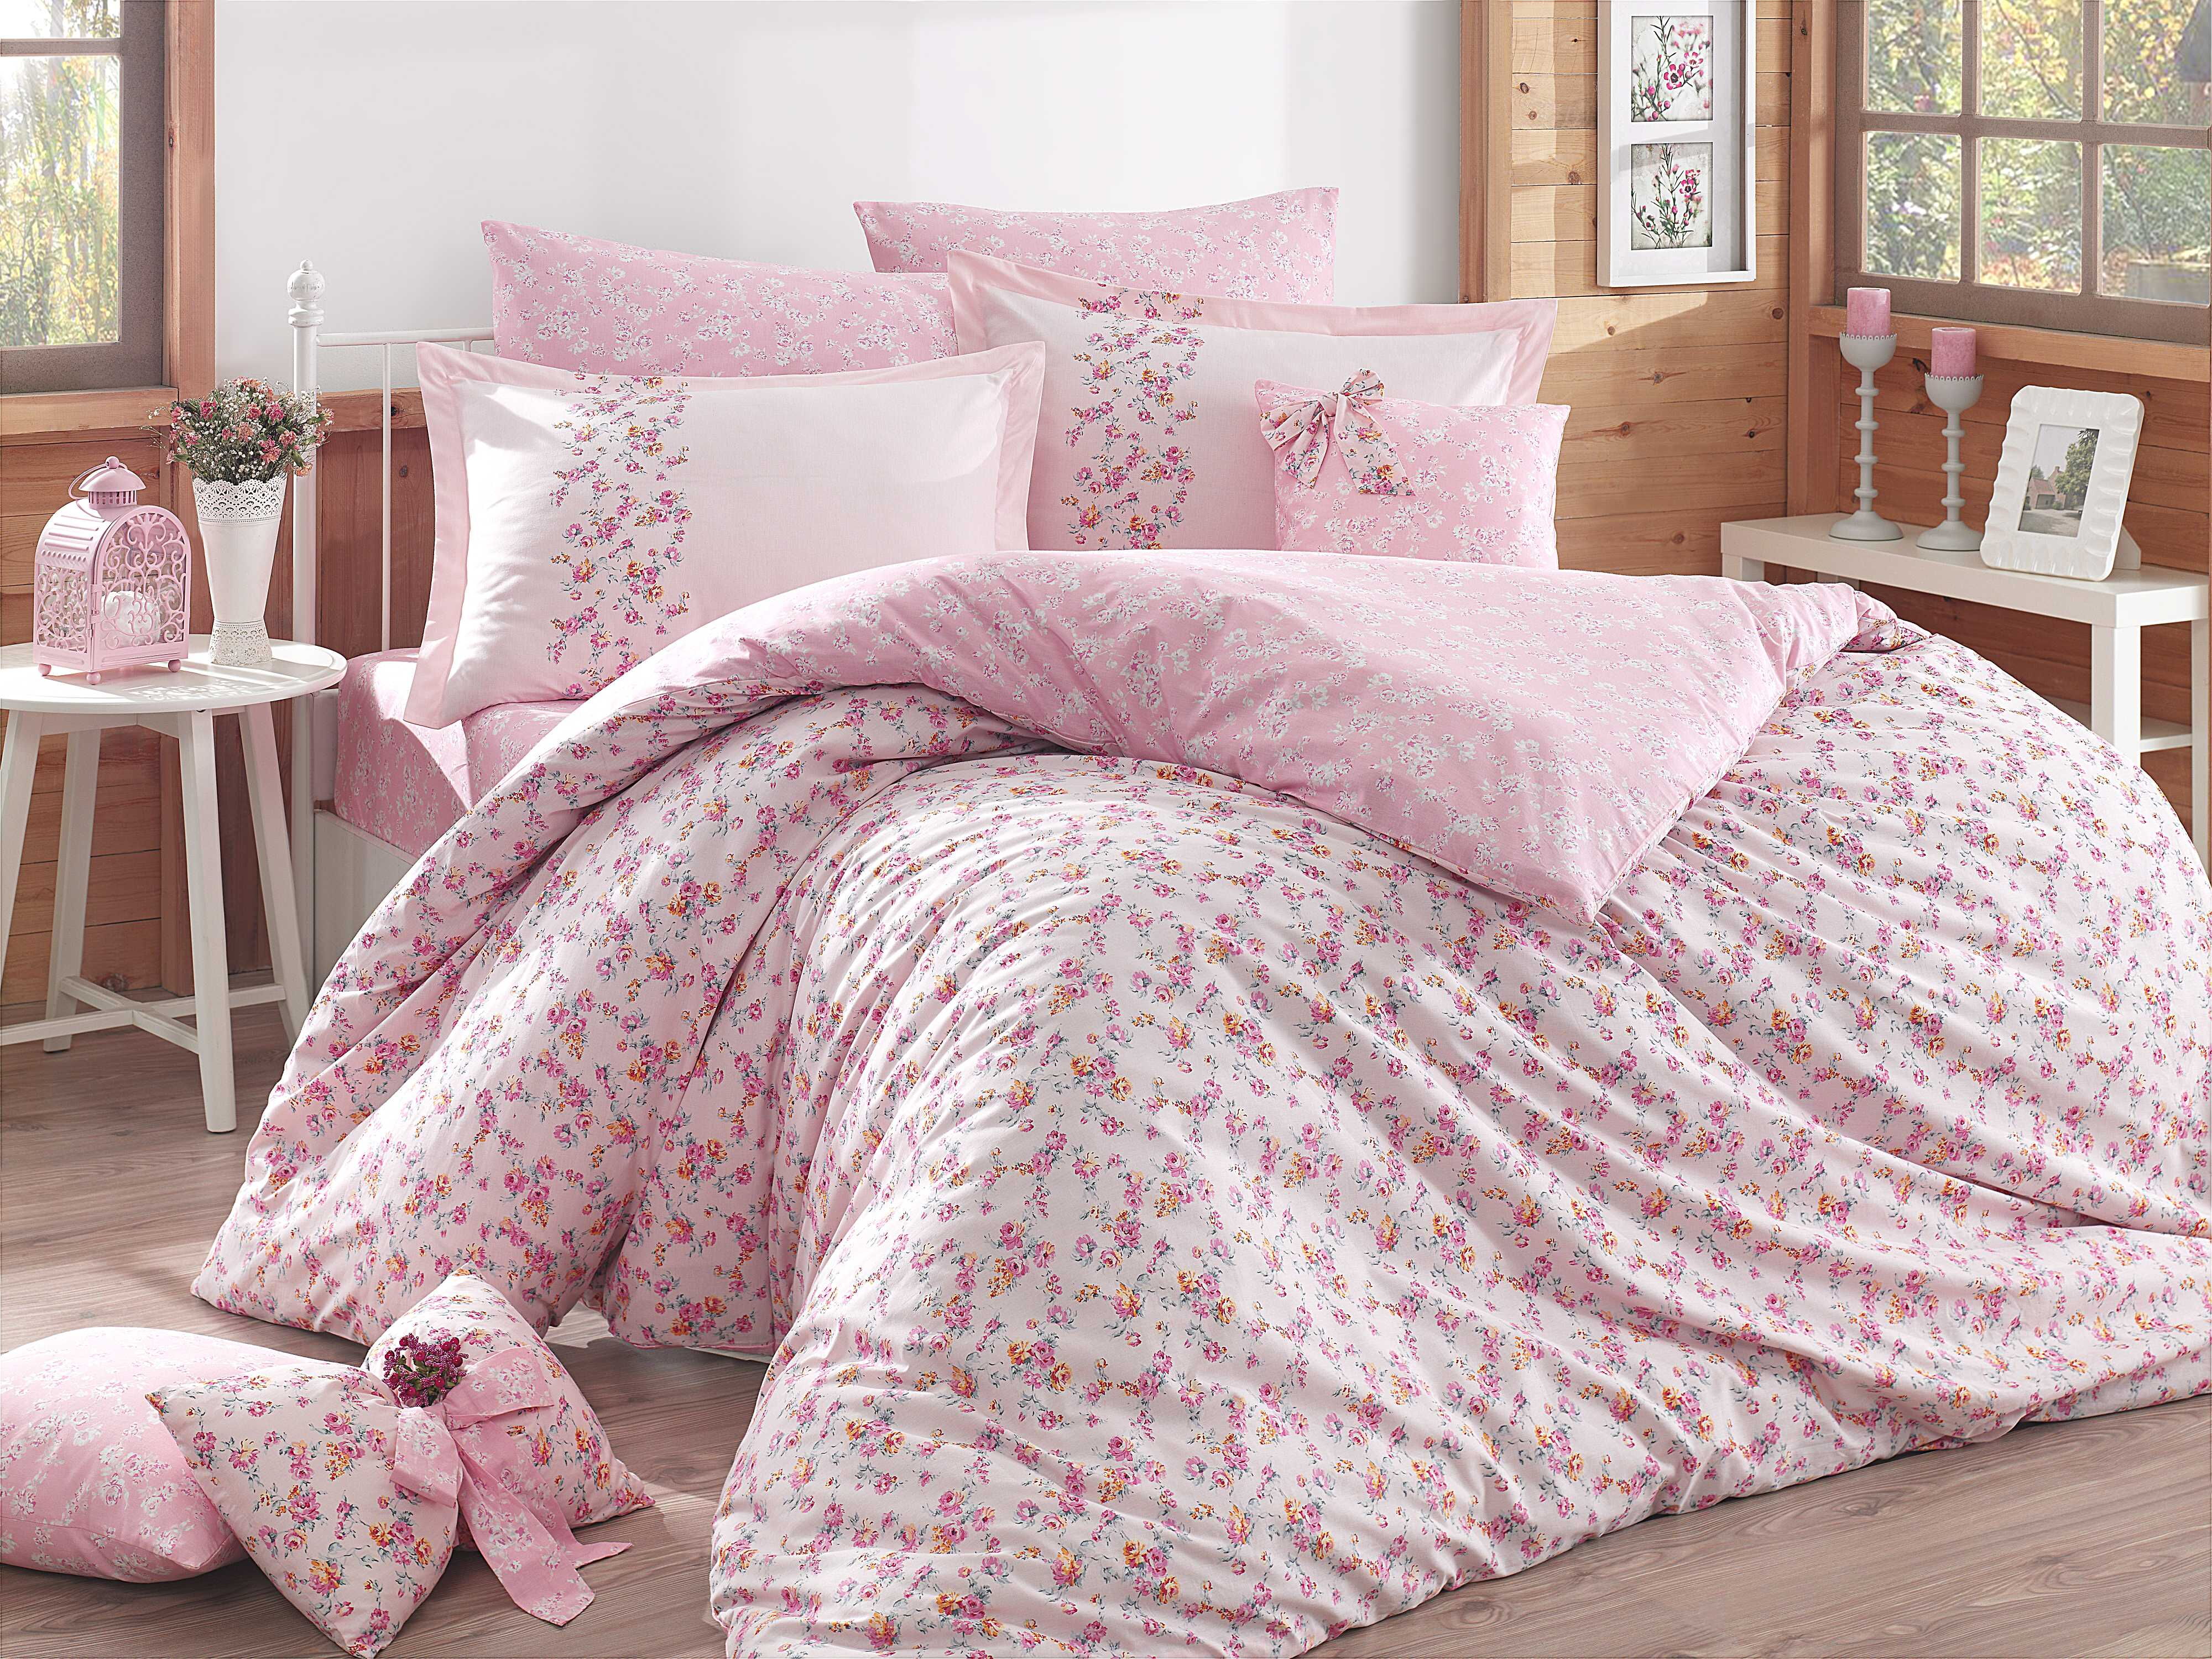 Комплект постельного белья HOBBY Poplin Luisa розовый 200*220 - цена